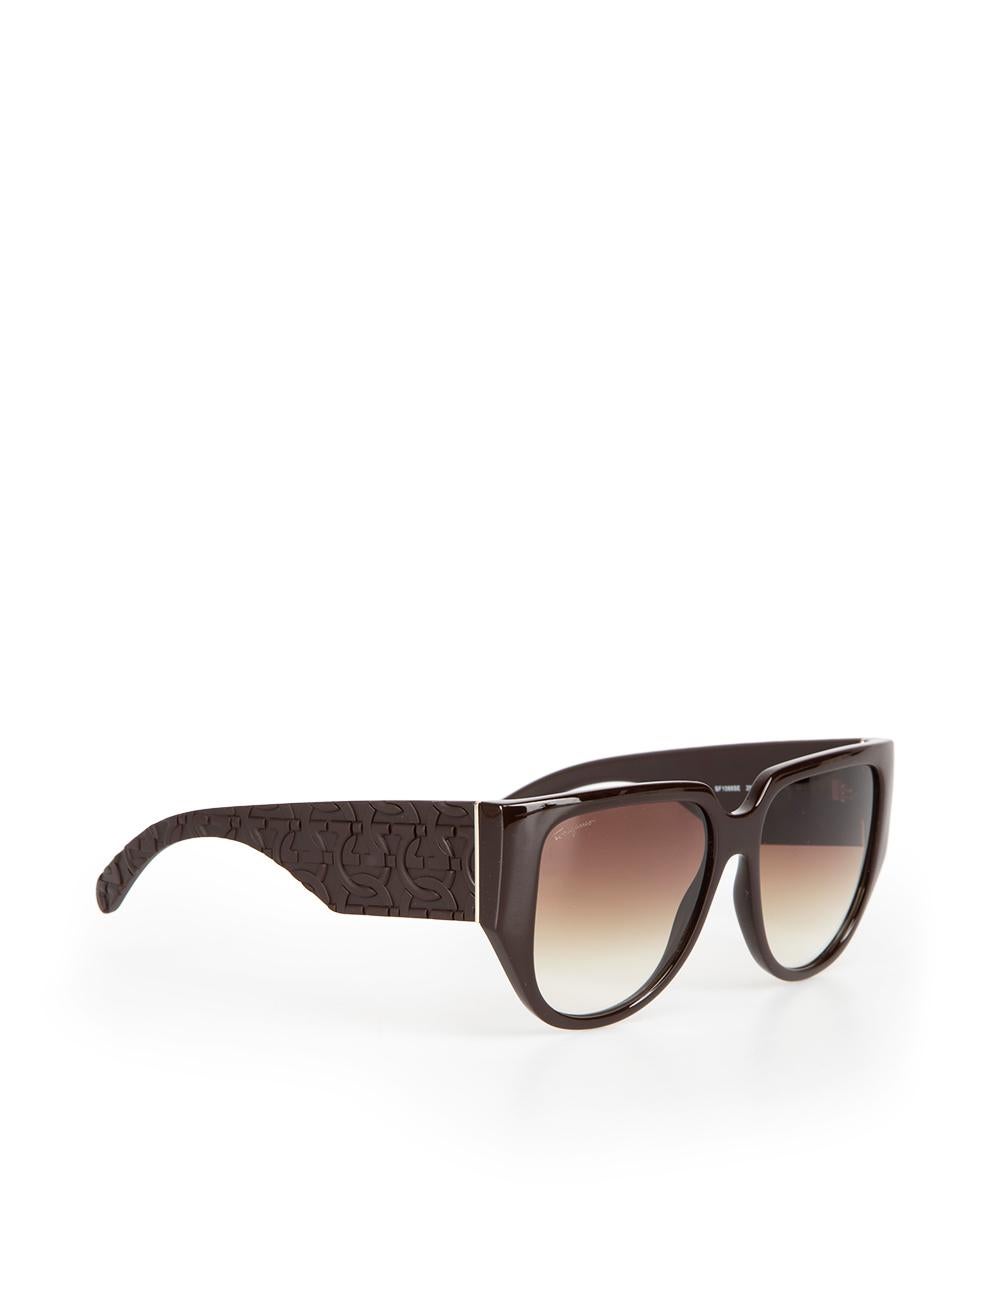 Salvatore Ferragamo Dark Brown Browline Gradient Sunglasses In New Condition For Sale In London, GB